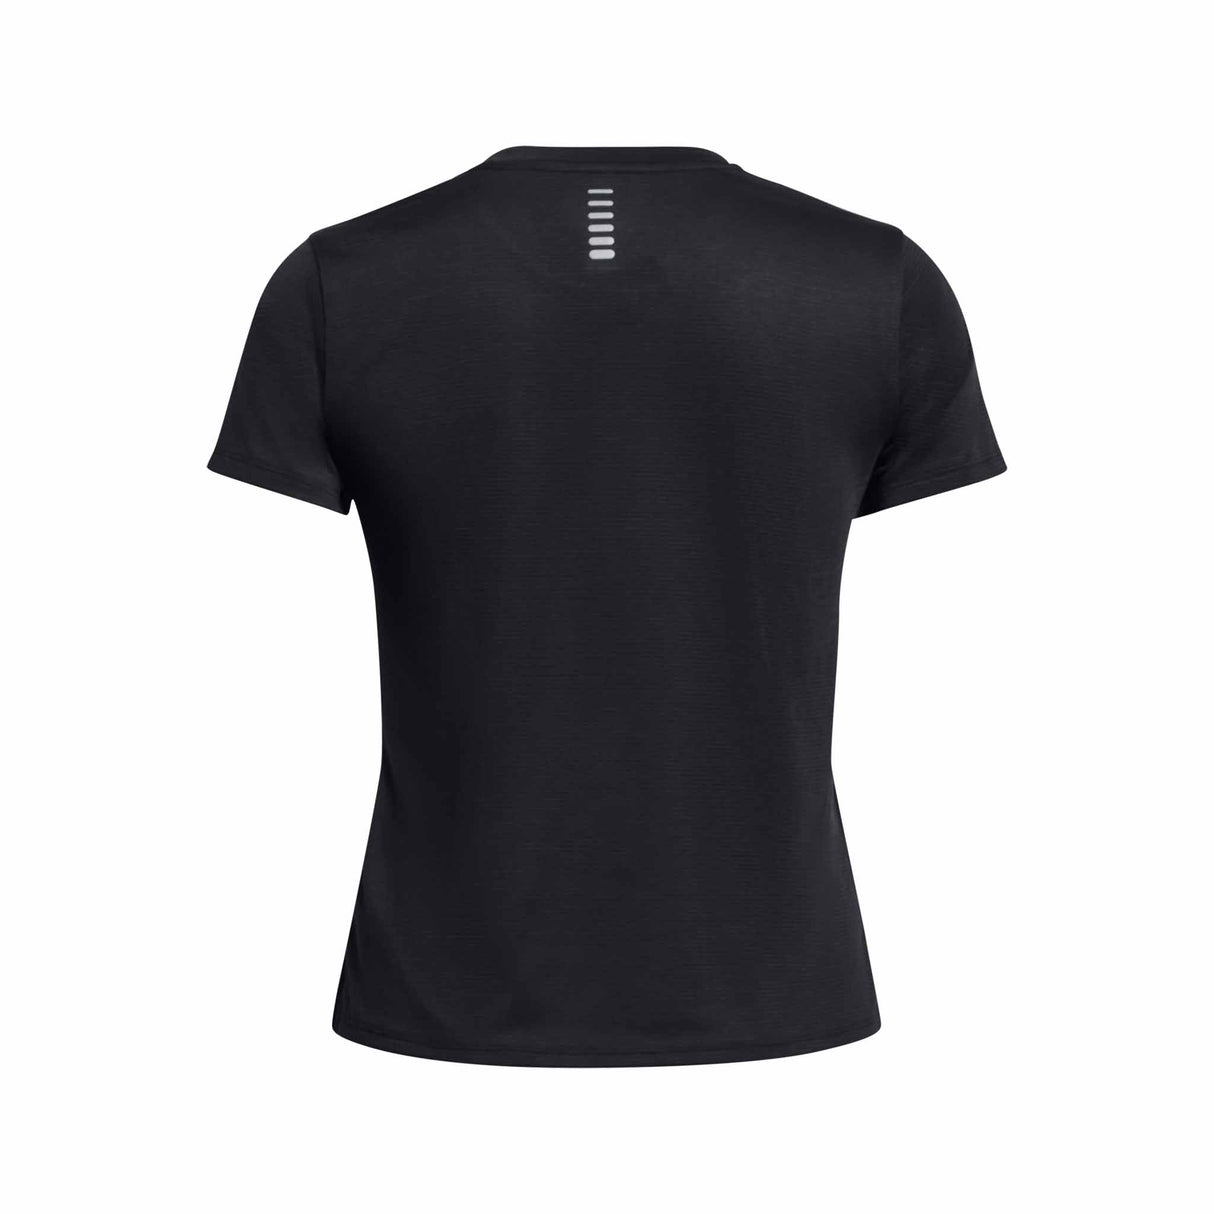 Under Armour Launch t-shirt à manches courtes femme dos - Black / Reflective